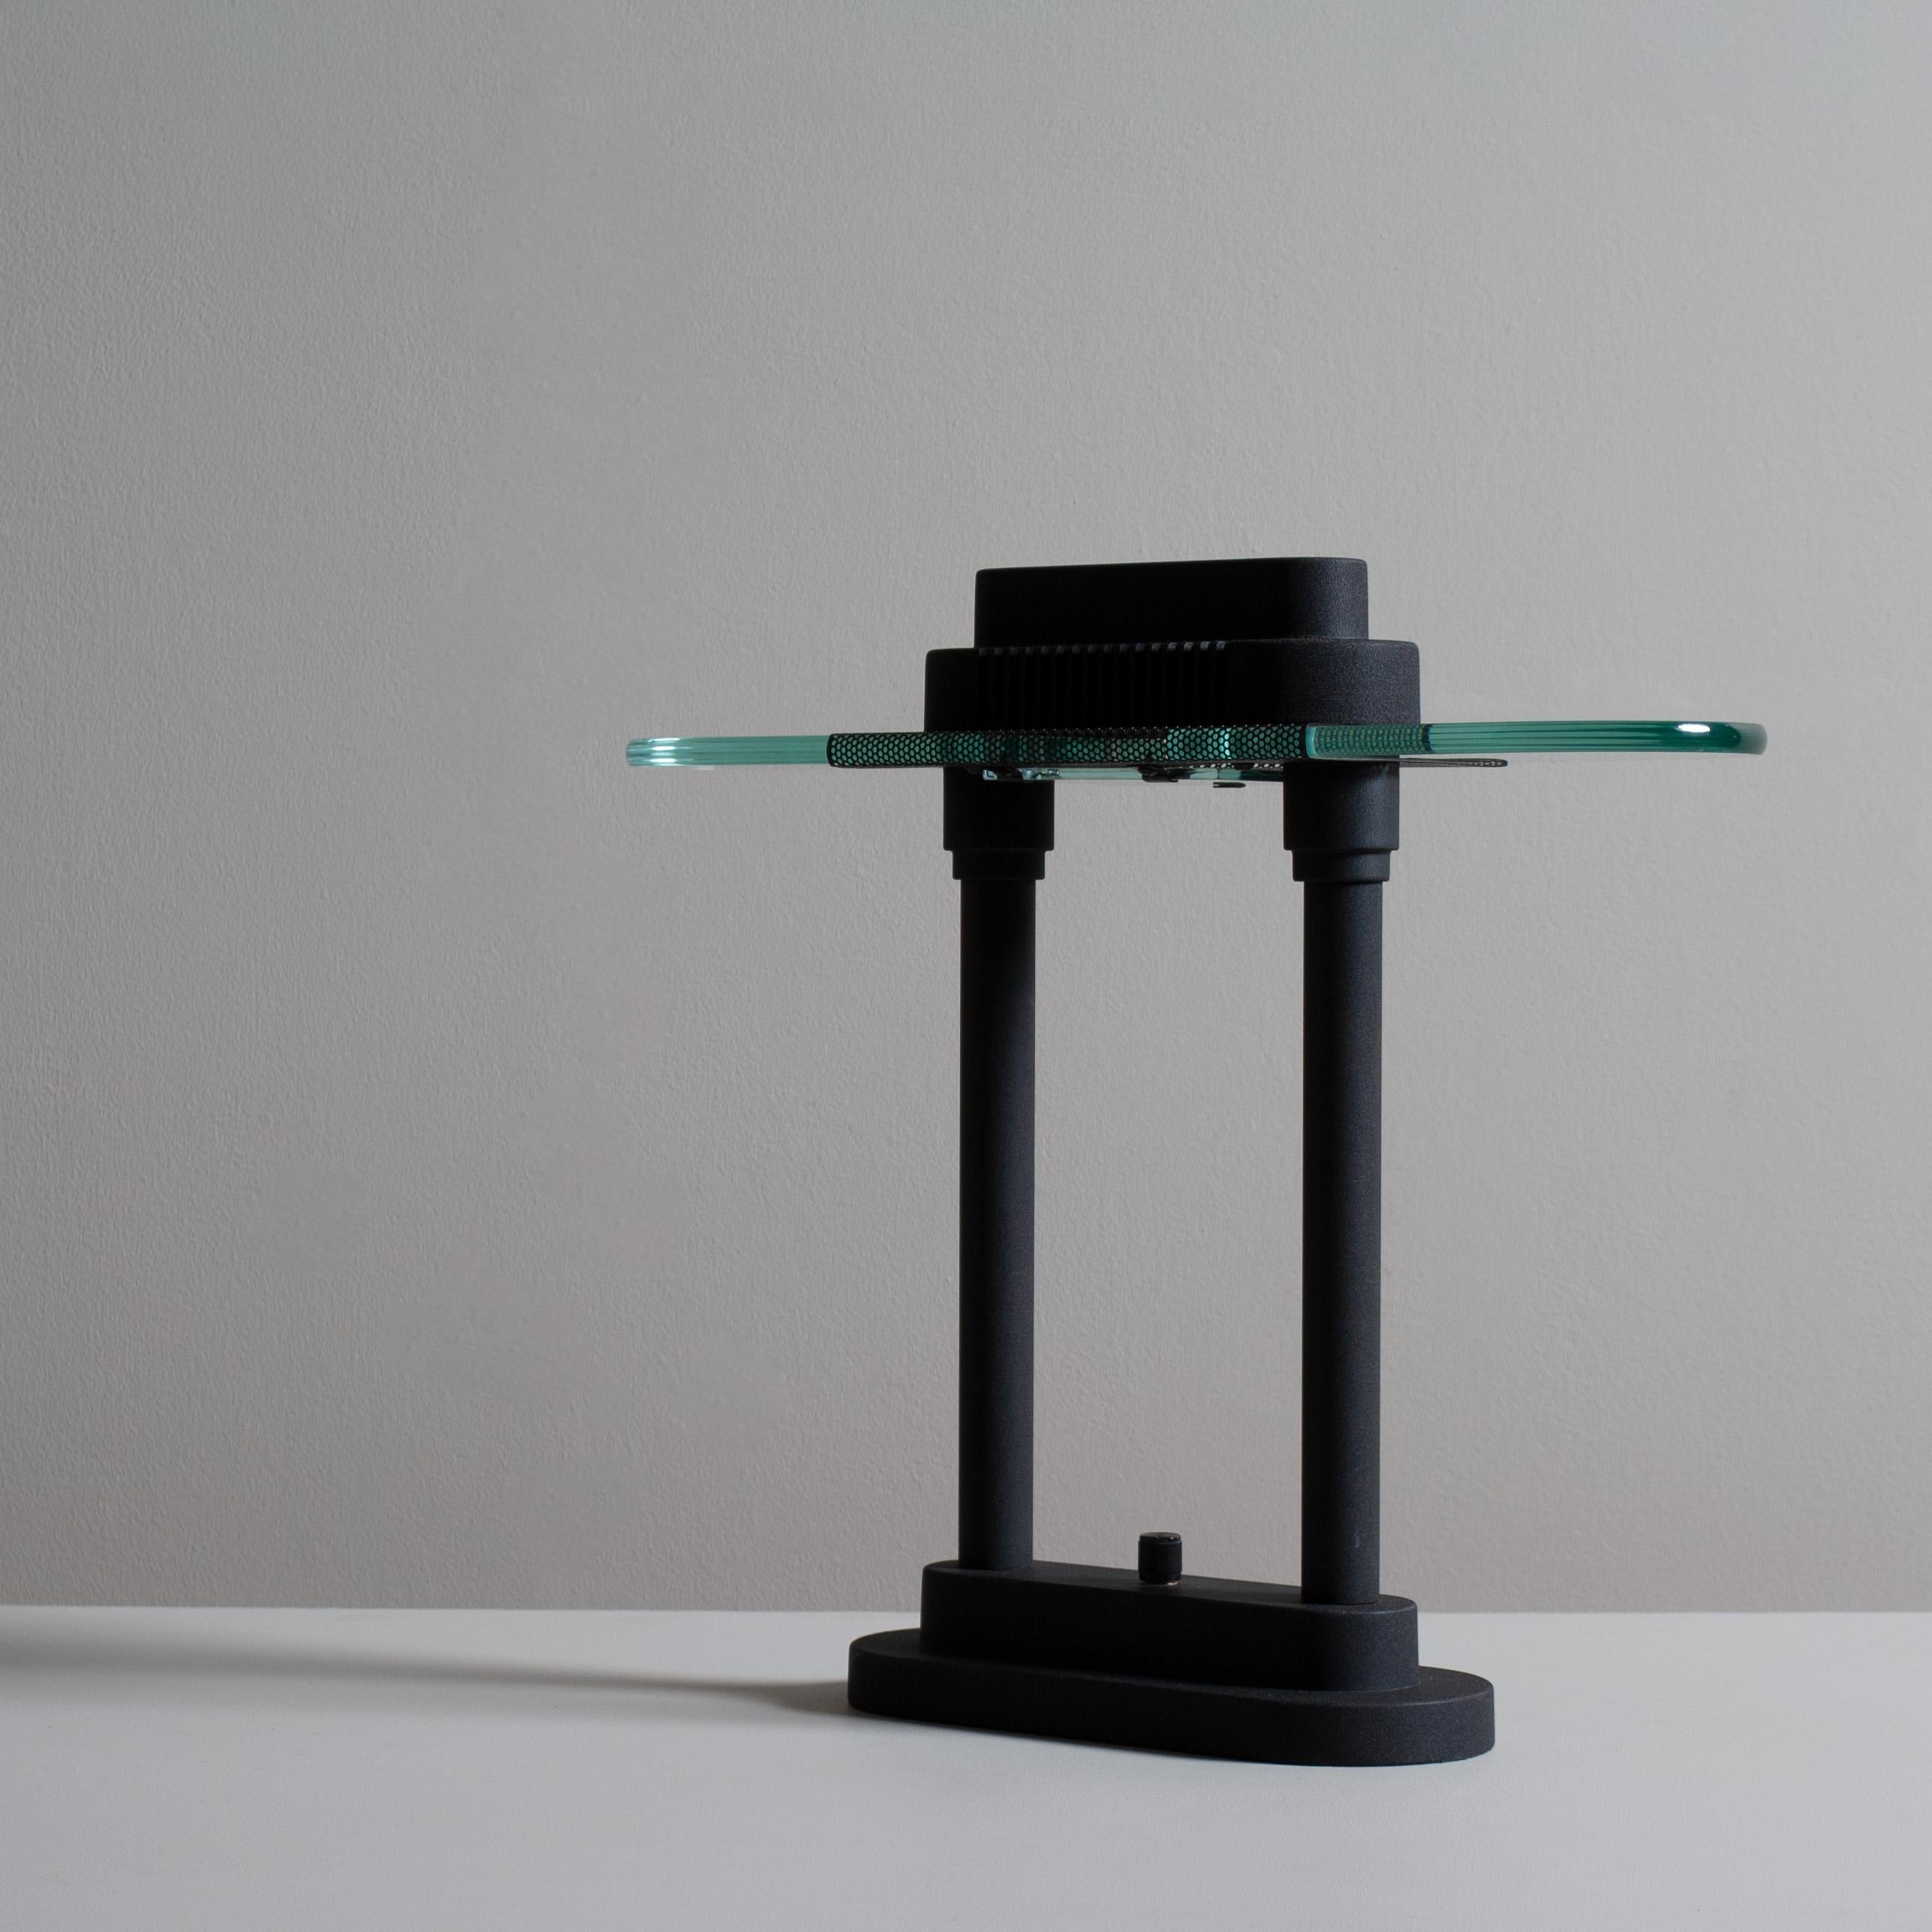 Ein schönes Exemplar der Robert Sonneman Memphis Design Tisch/Schreibtischlampe. Mattschwarze Ausführung mit dickem Glasdiffusor oben. Dimmbarer Schalter. Wunderschönes architektonisches Design.